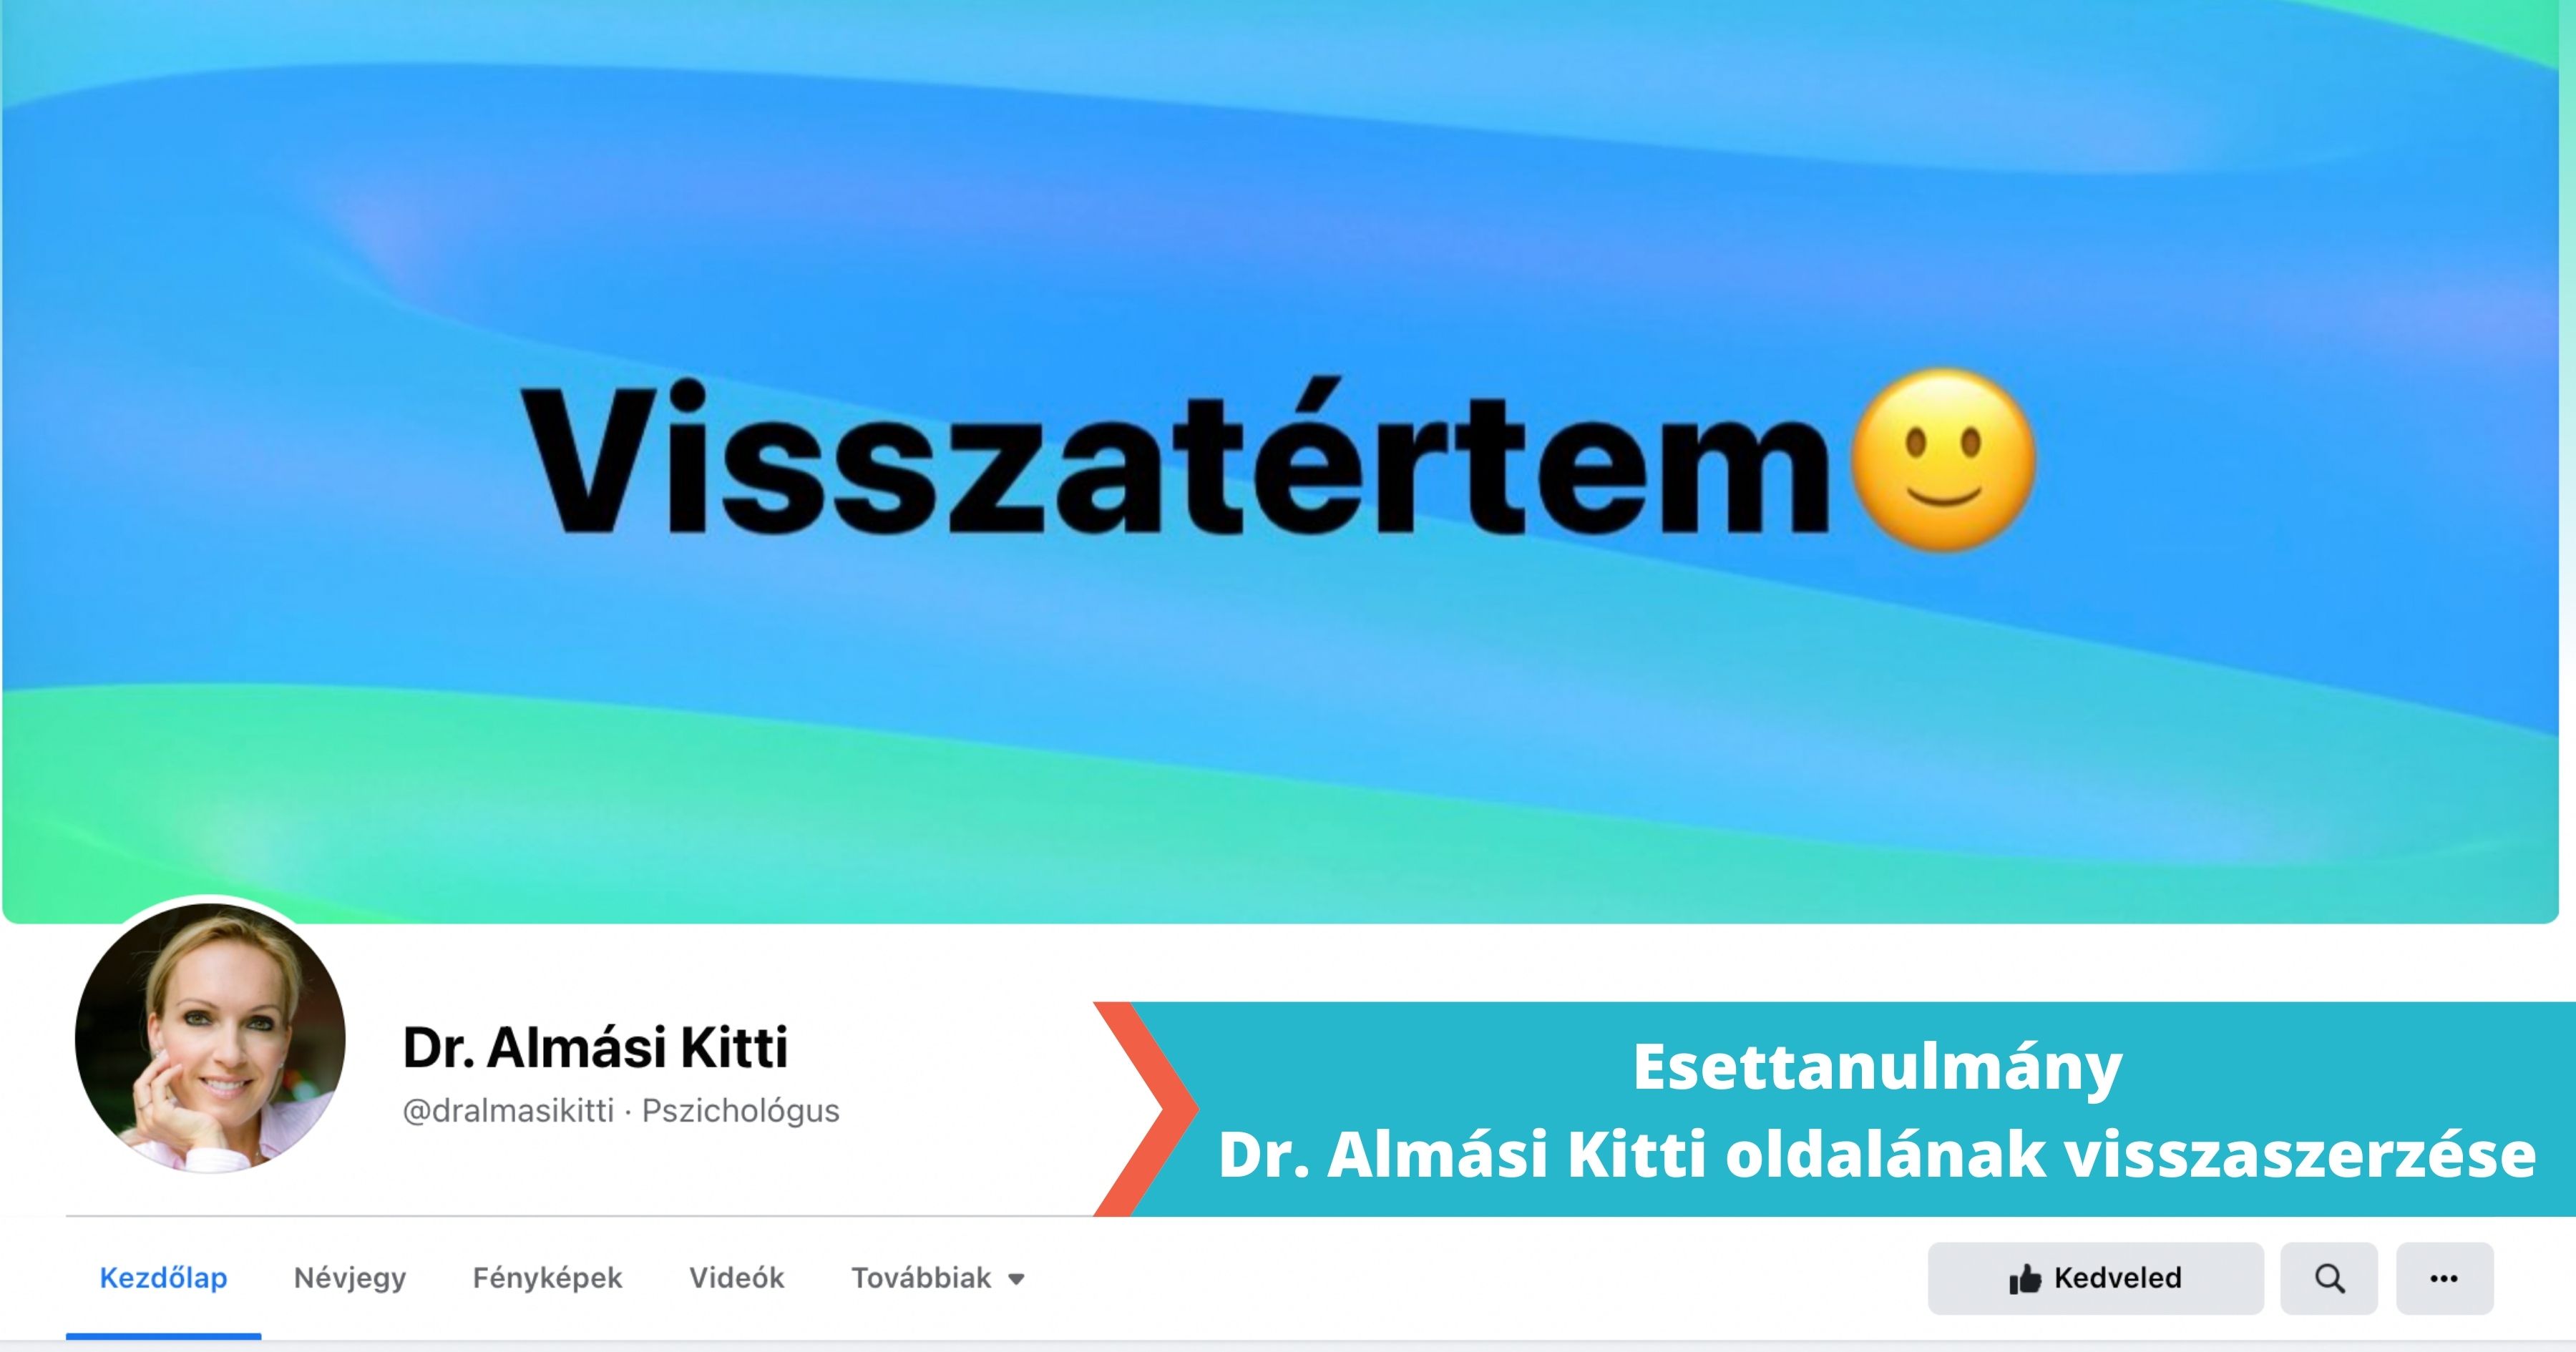 Ellopott Facebook oldal visszaszerzése: Összefoglaló esettanulmány Dr. Almási Kitti feltört és ellopott Facebook oldalának visszaszerzéséről.